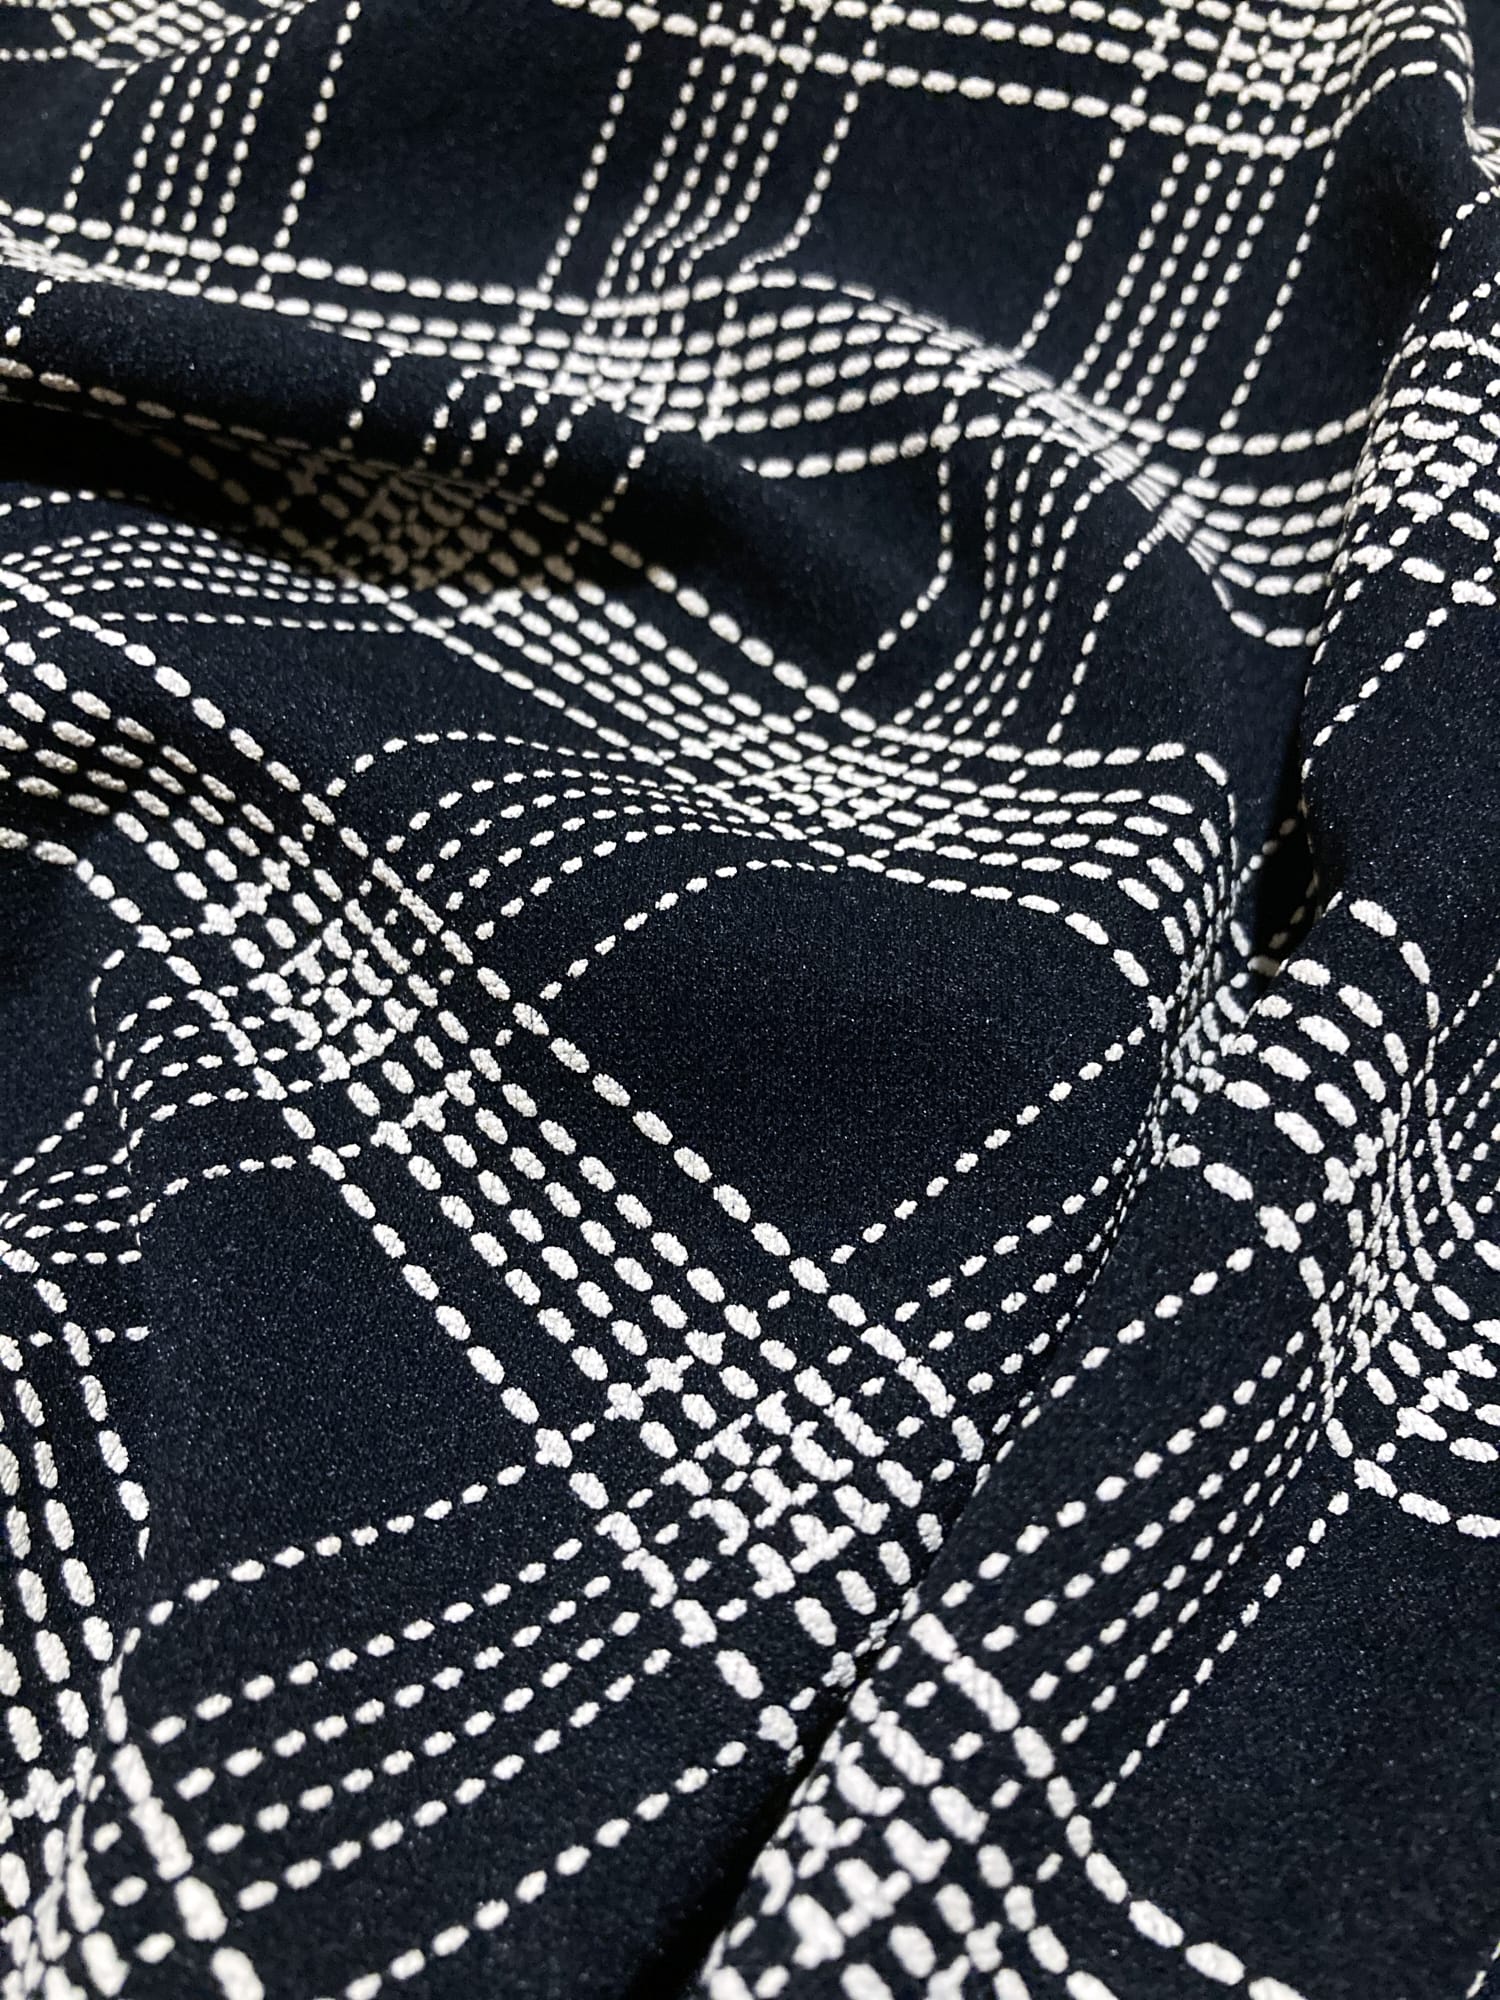 Morgan de Toi black stretch cotton diagonal check long sleeve top